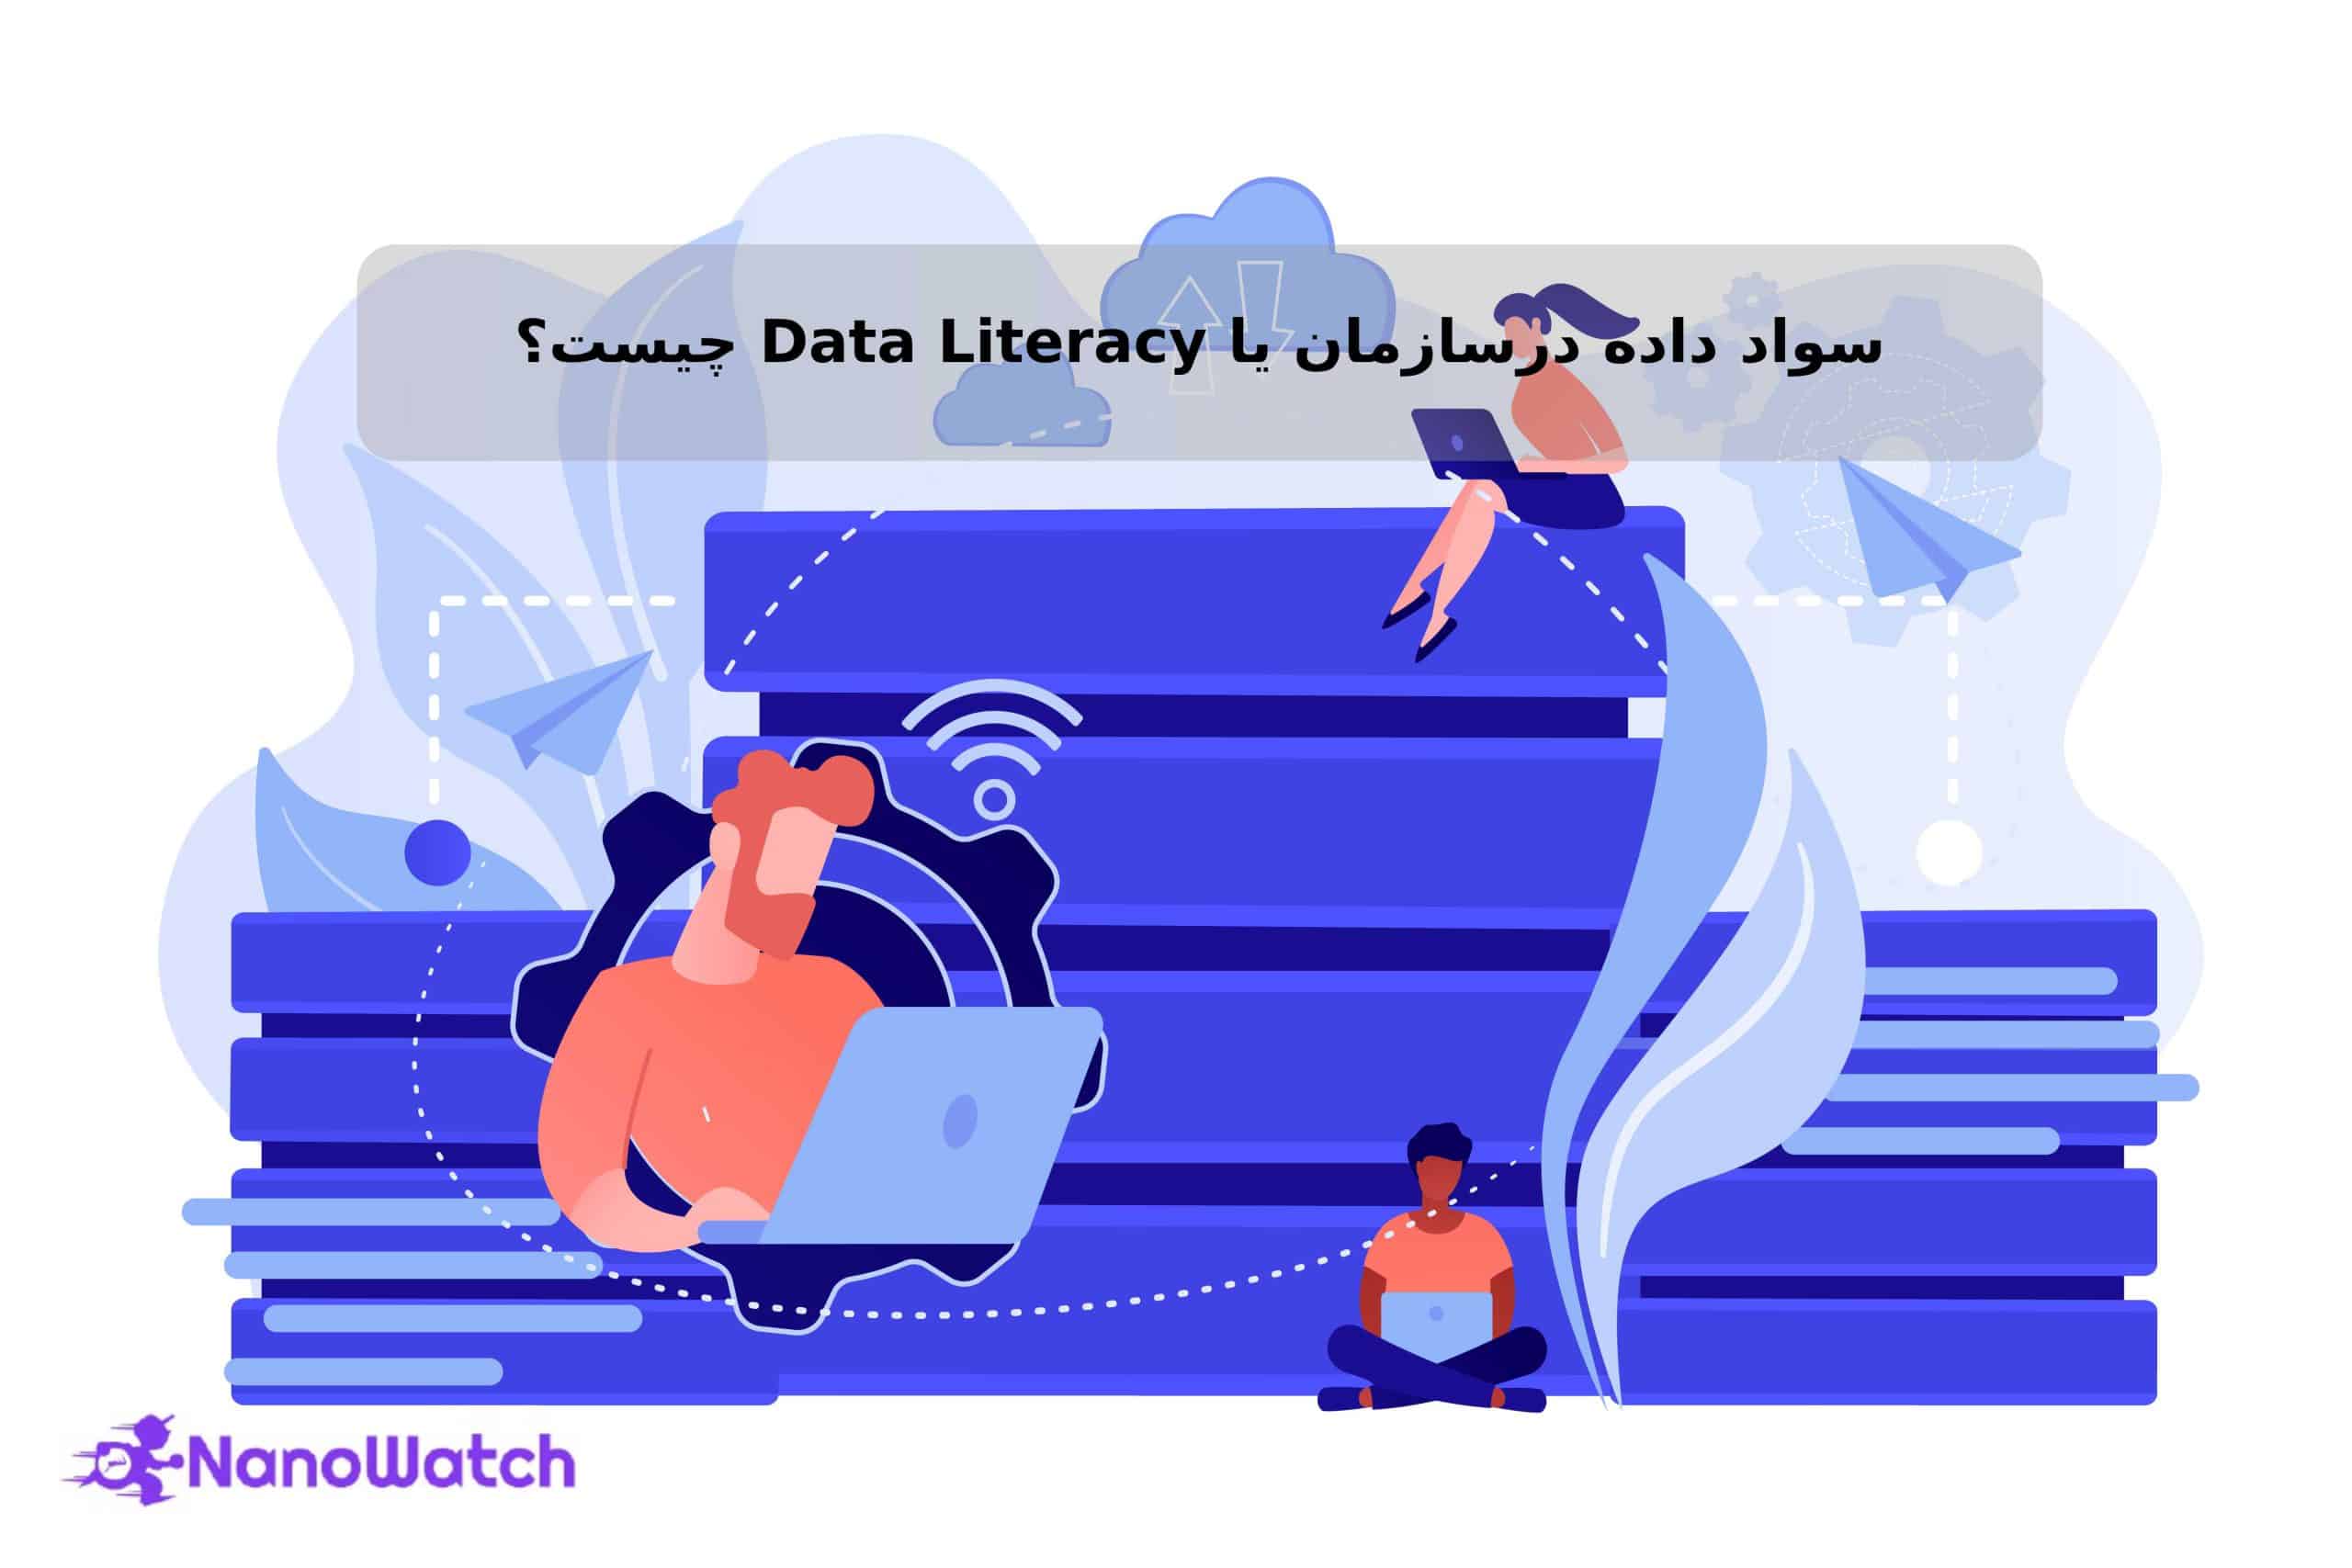 سواد داده در سازمان (Data literacy) چیست؟